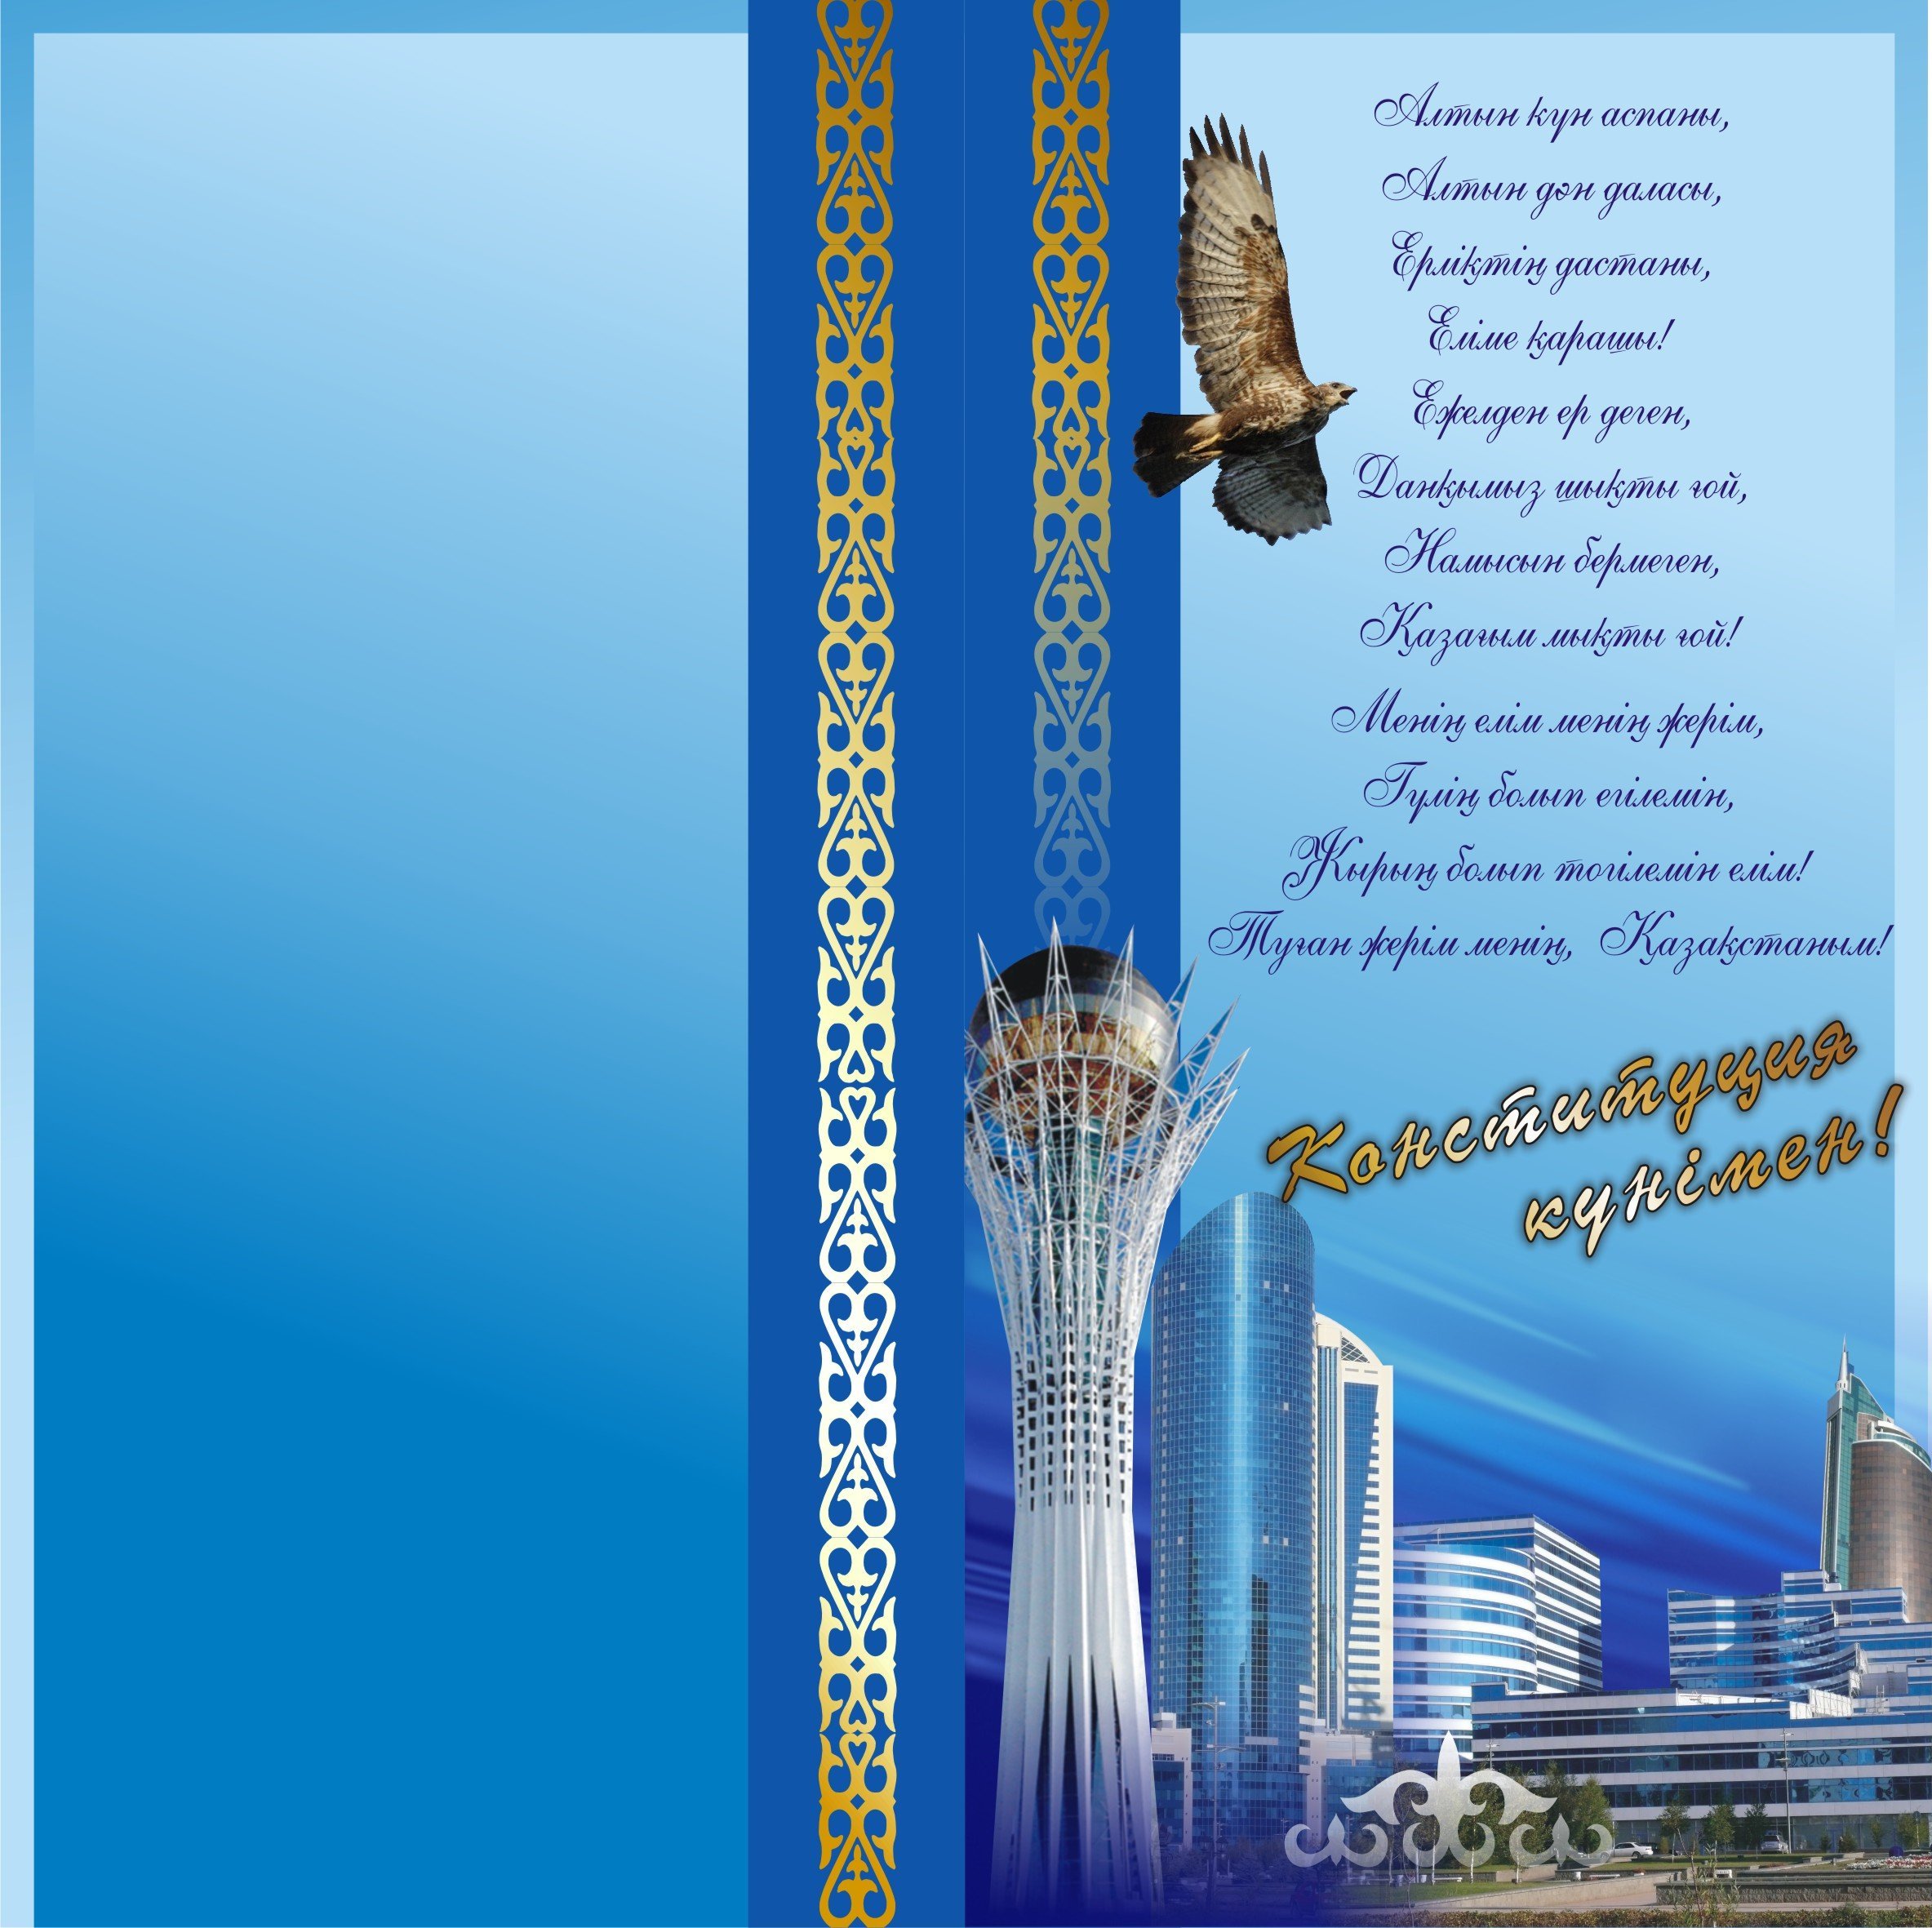 Поздравление на казахском языке красивое. Буклеты ко Дню независимости. Открытки с днём независимости Казахстана. С днем независимости Казахстана открытка на казахском. Рамки для поздравления с днем независимости.